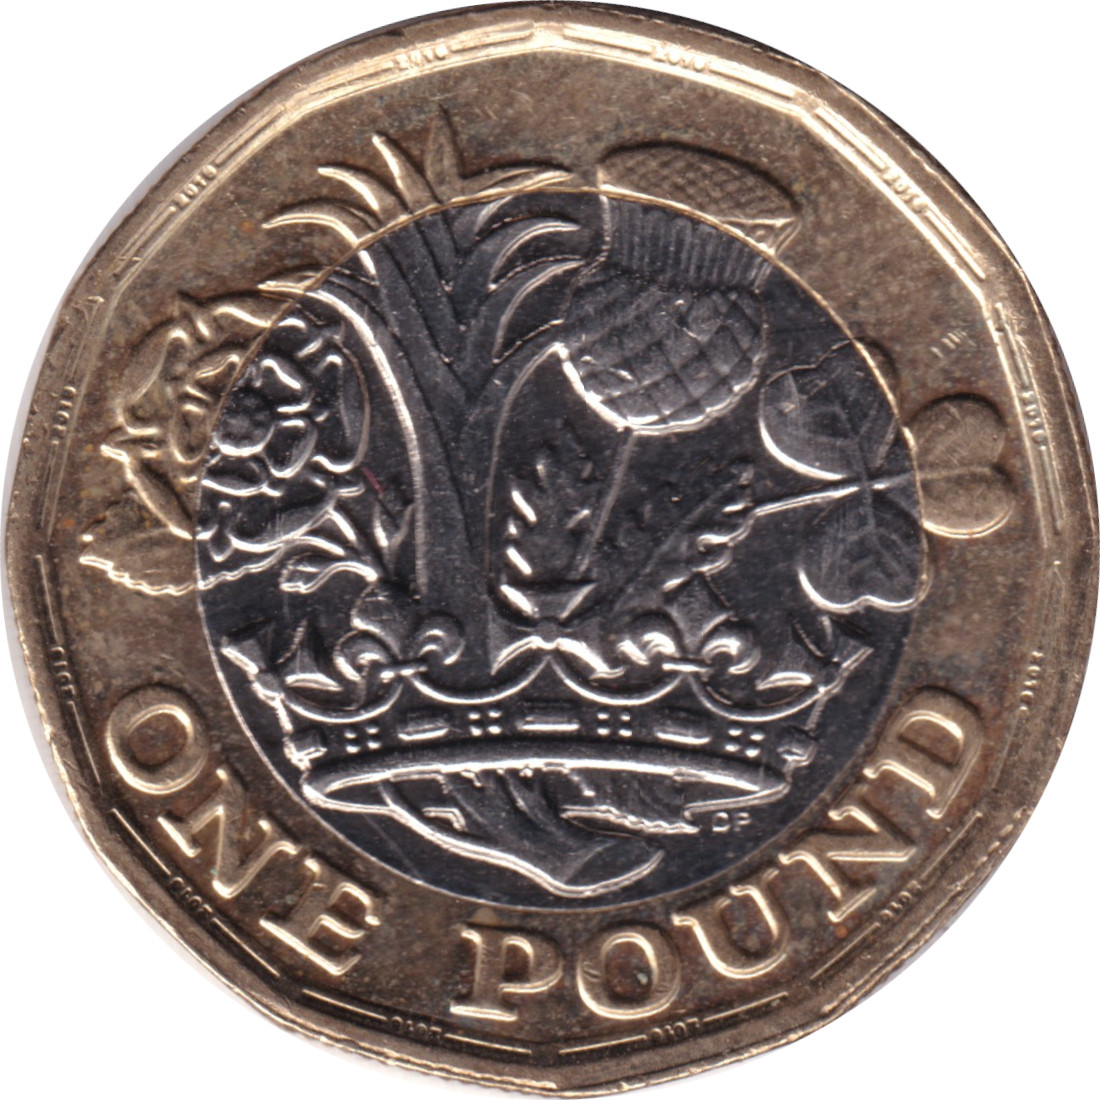 1 pound - Elizabeth II - Tête historique - Couronne